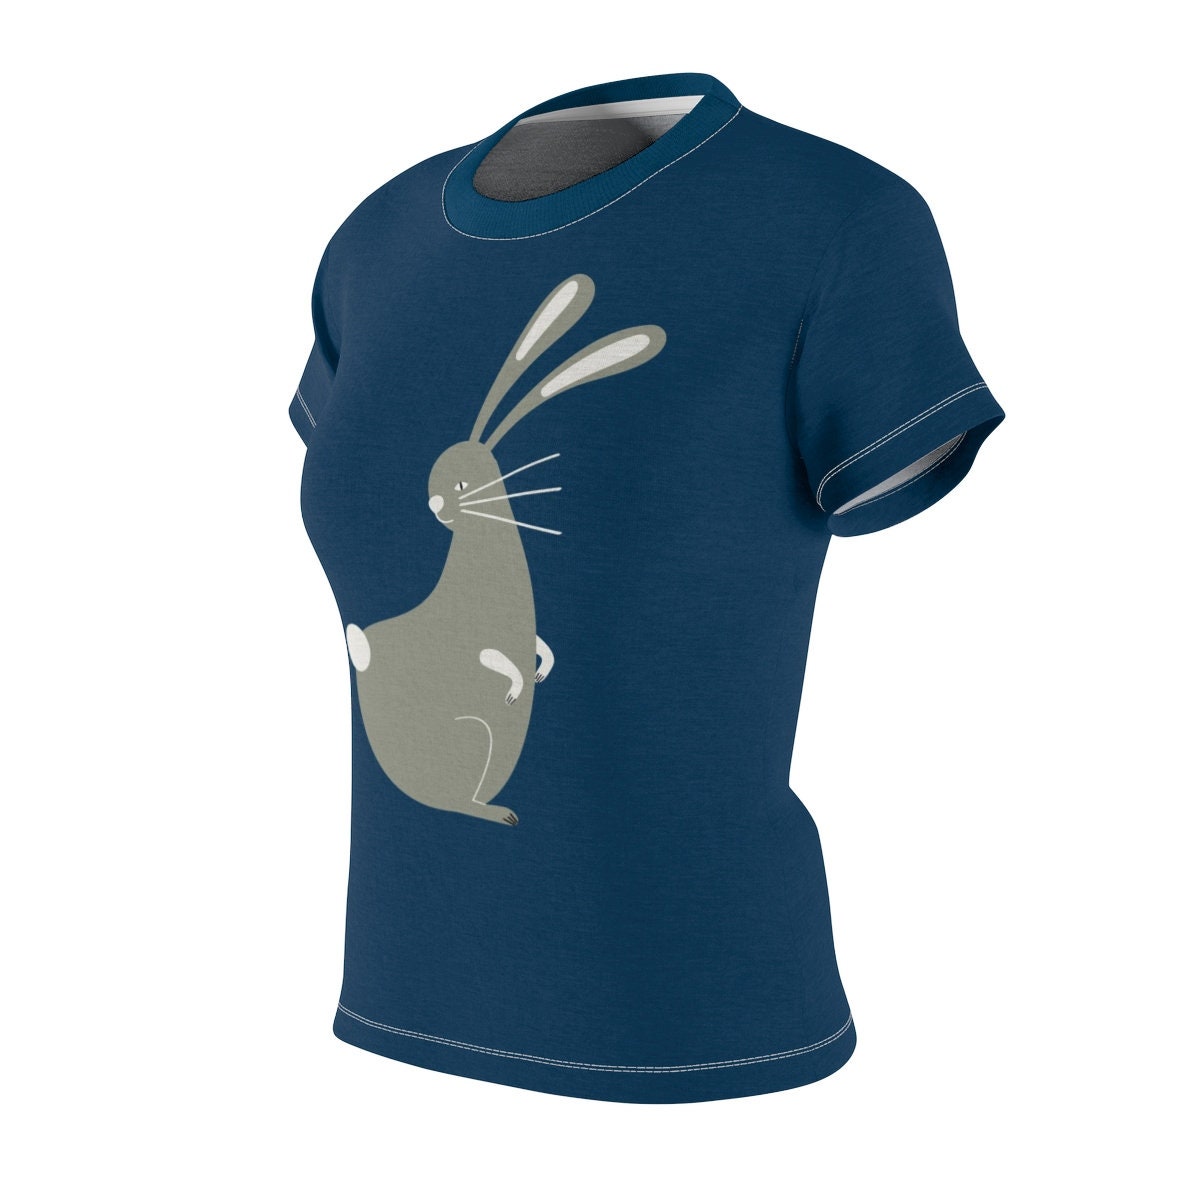 Year of the Rabbit / Astrology / Chinese / Zodiac / T-shirt / Tee / Shirt / Rabbit / Art / Valentine / Birthday / Clothing / Gift for Her - Chloe Lambertin